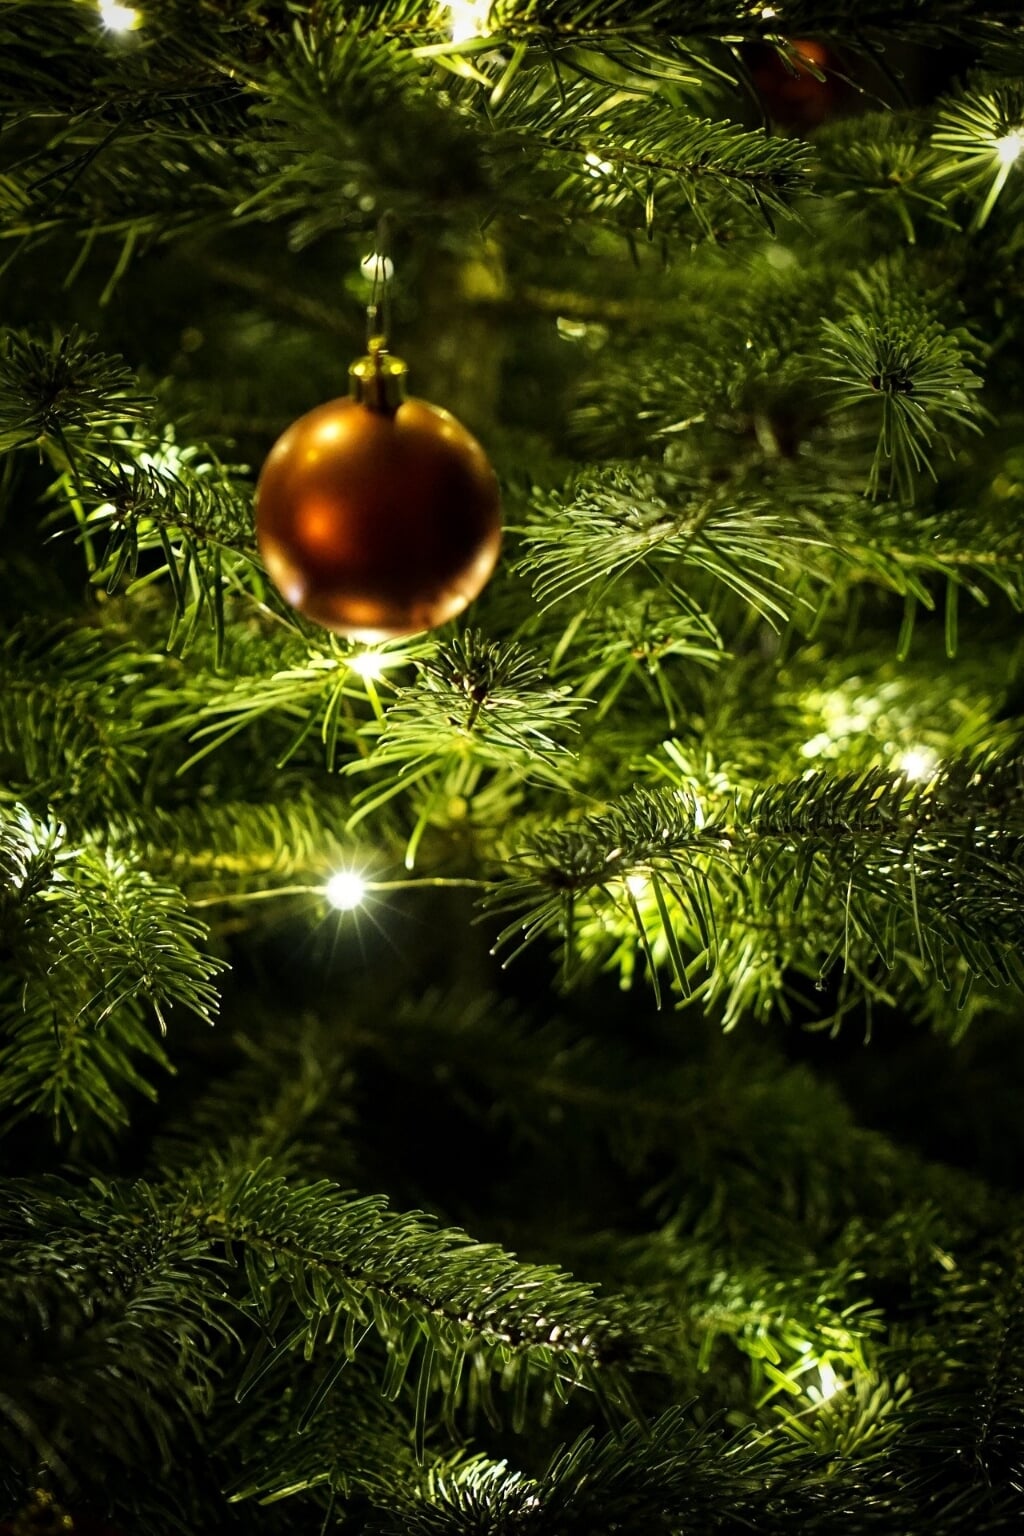 Breng licht in donkere tijden door de kerstboom buiten te zetten.